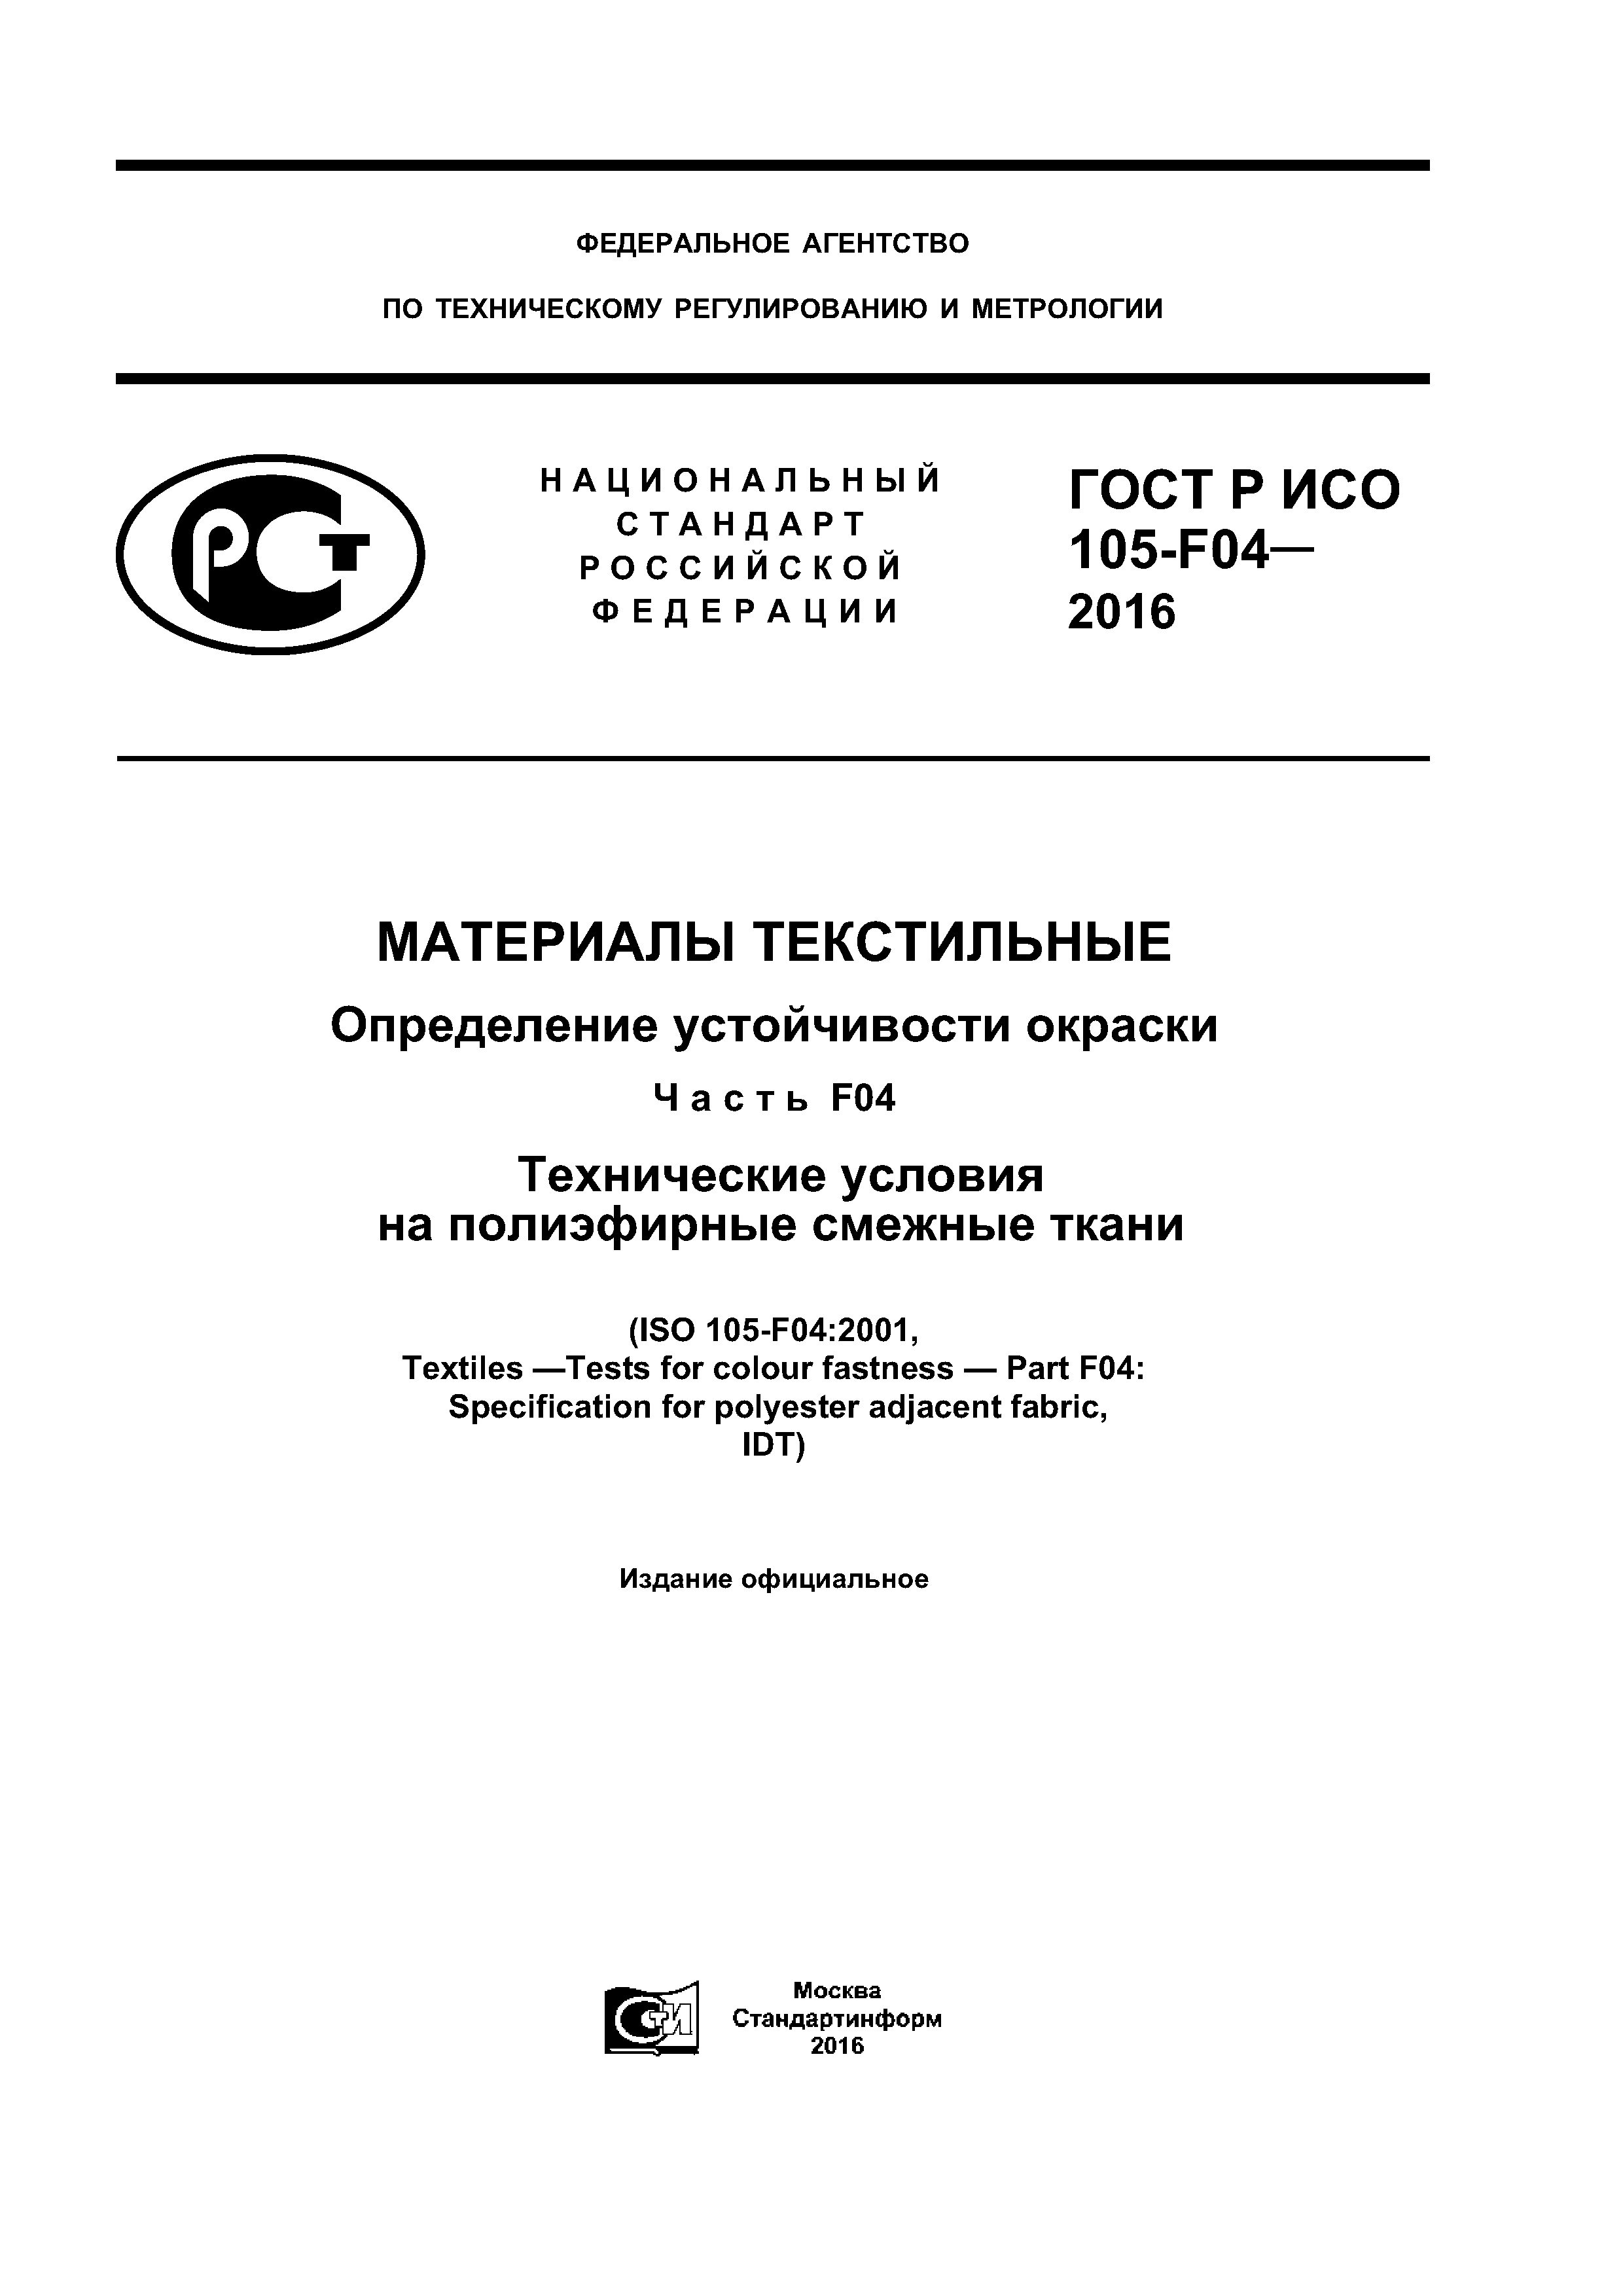 ГОСТ Р ИСО 105-F04-2016